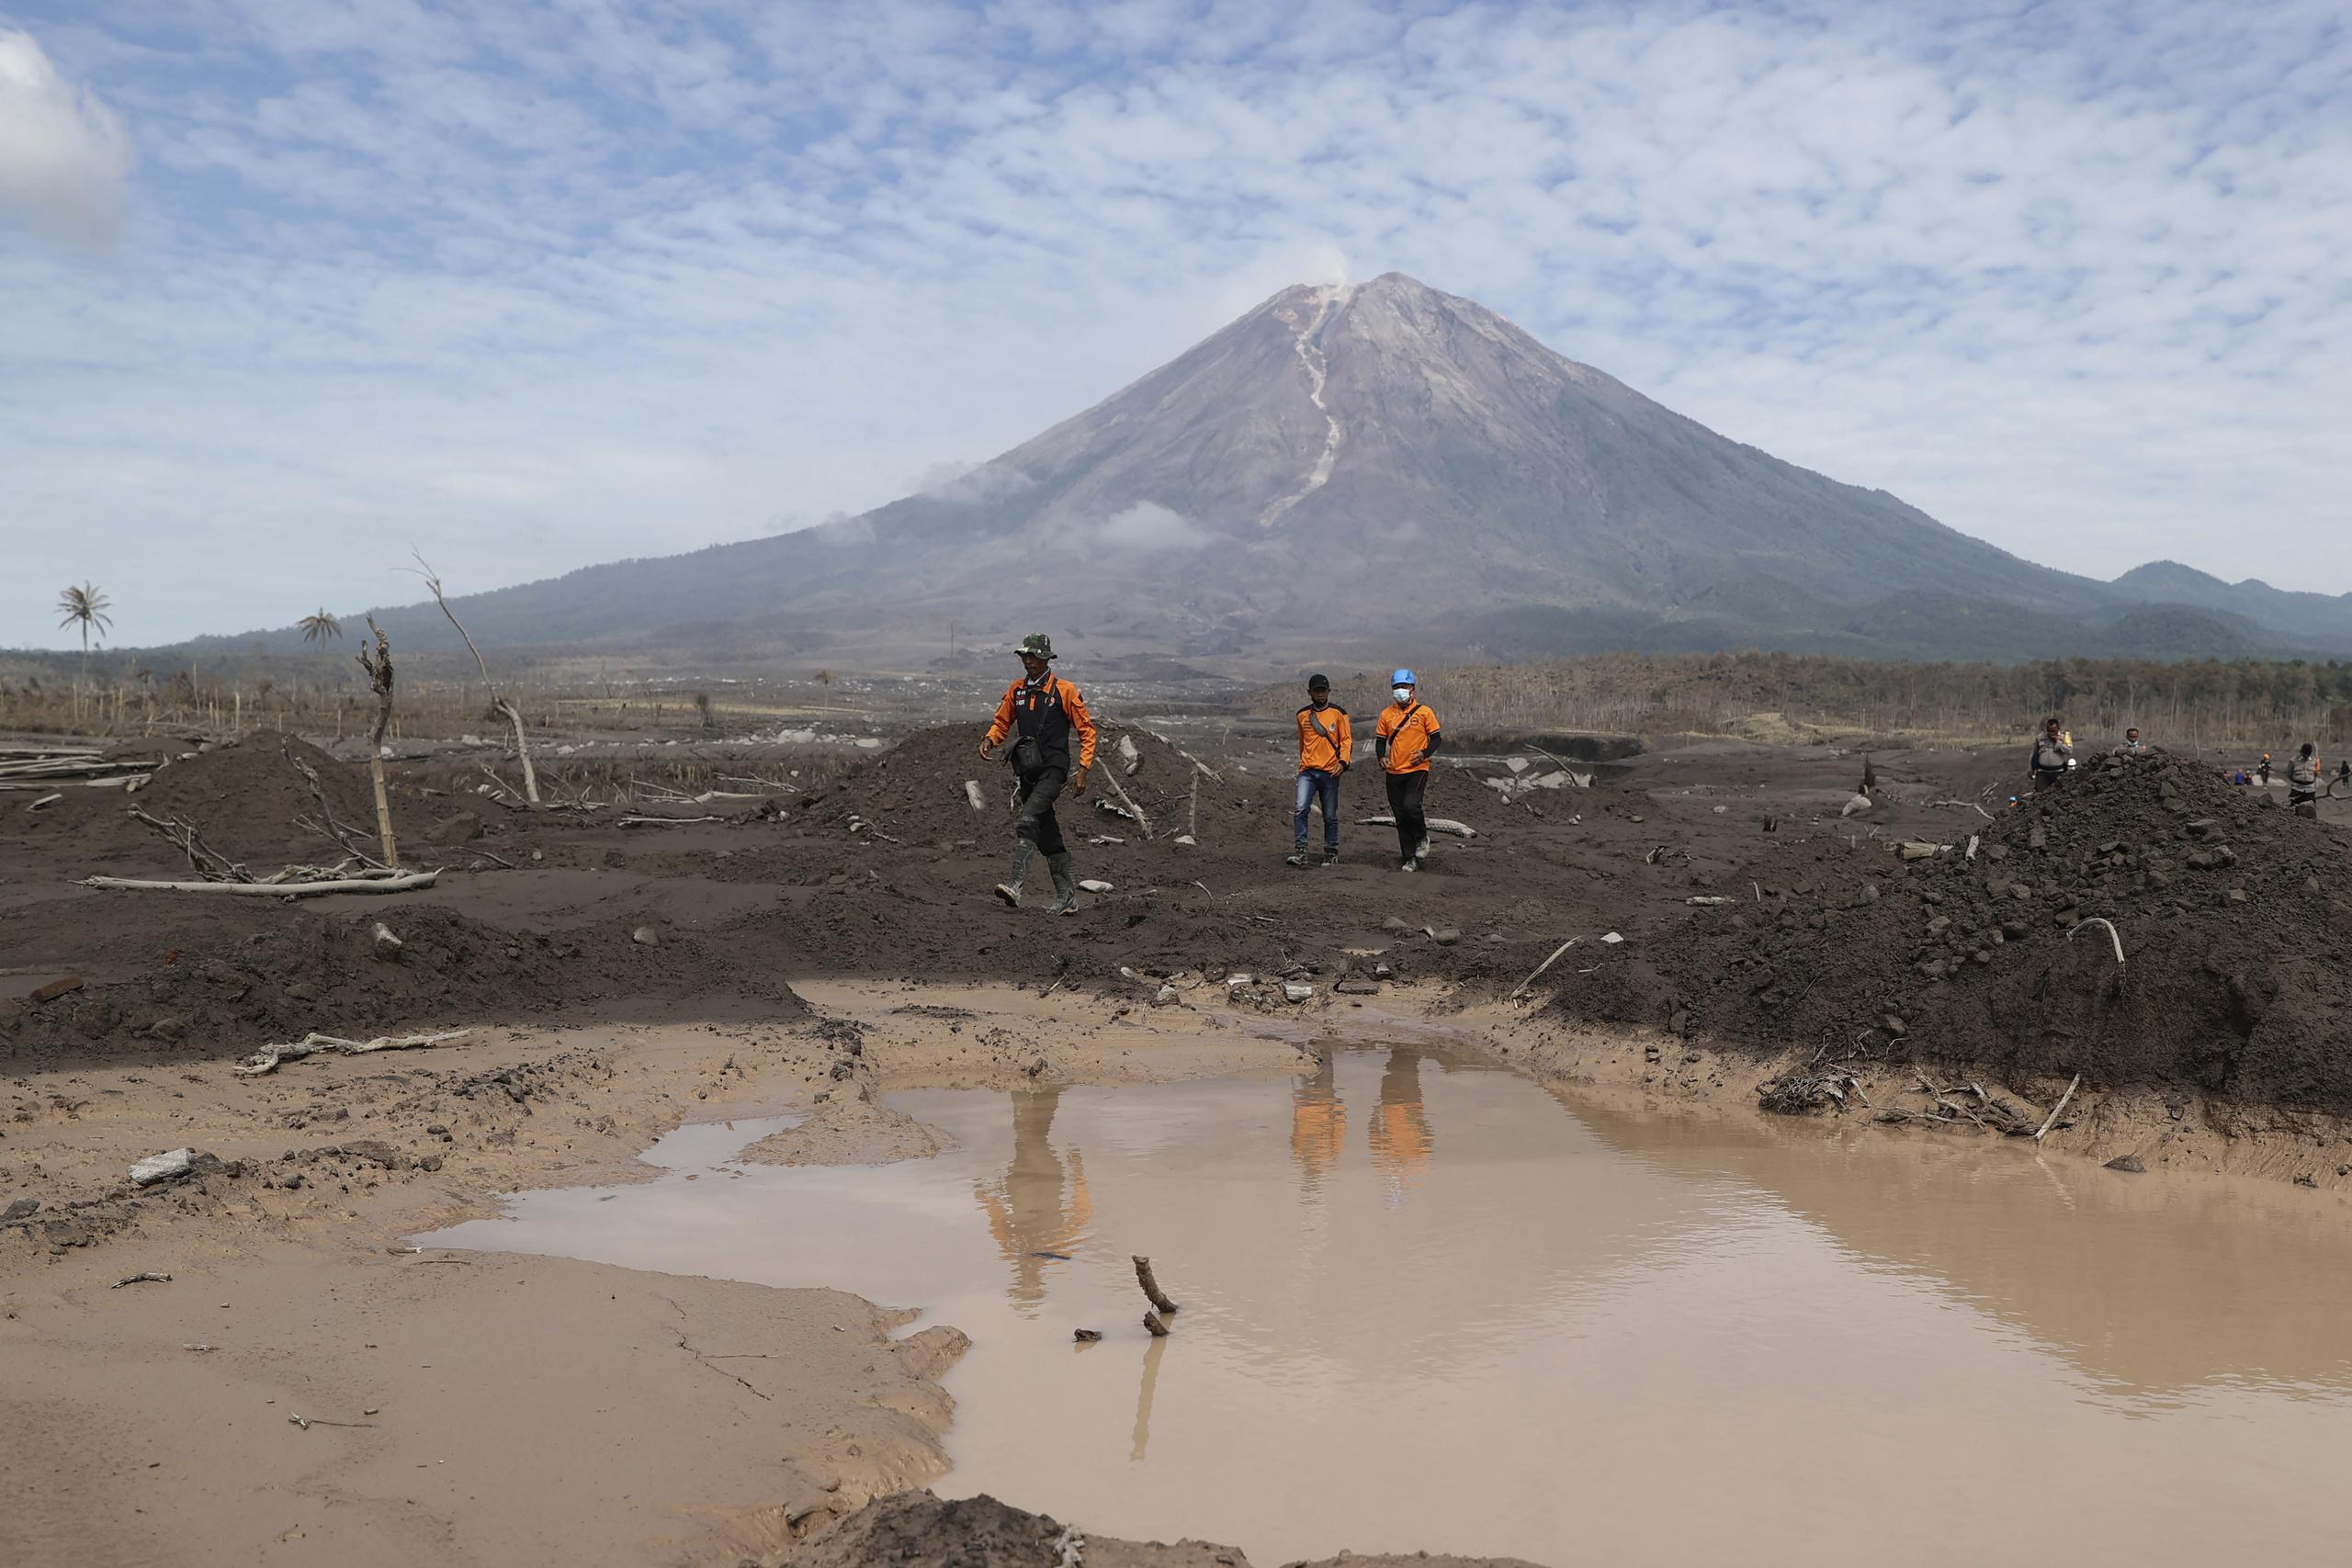 Socorristas caminan en un área afectada por la erupción del monte Semeru, al fondo, durante una búsqueda de víctimas en Lumajang, Java Oriental, Indonesia, el miércoles 8 de diciembre de 2021. (Foto AP/Trisnadi)